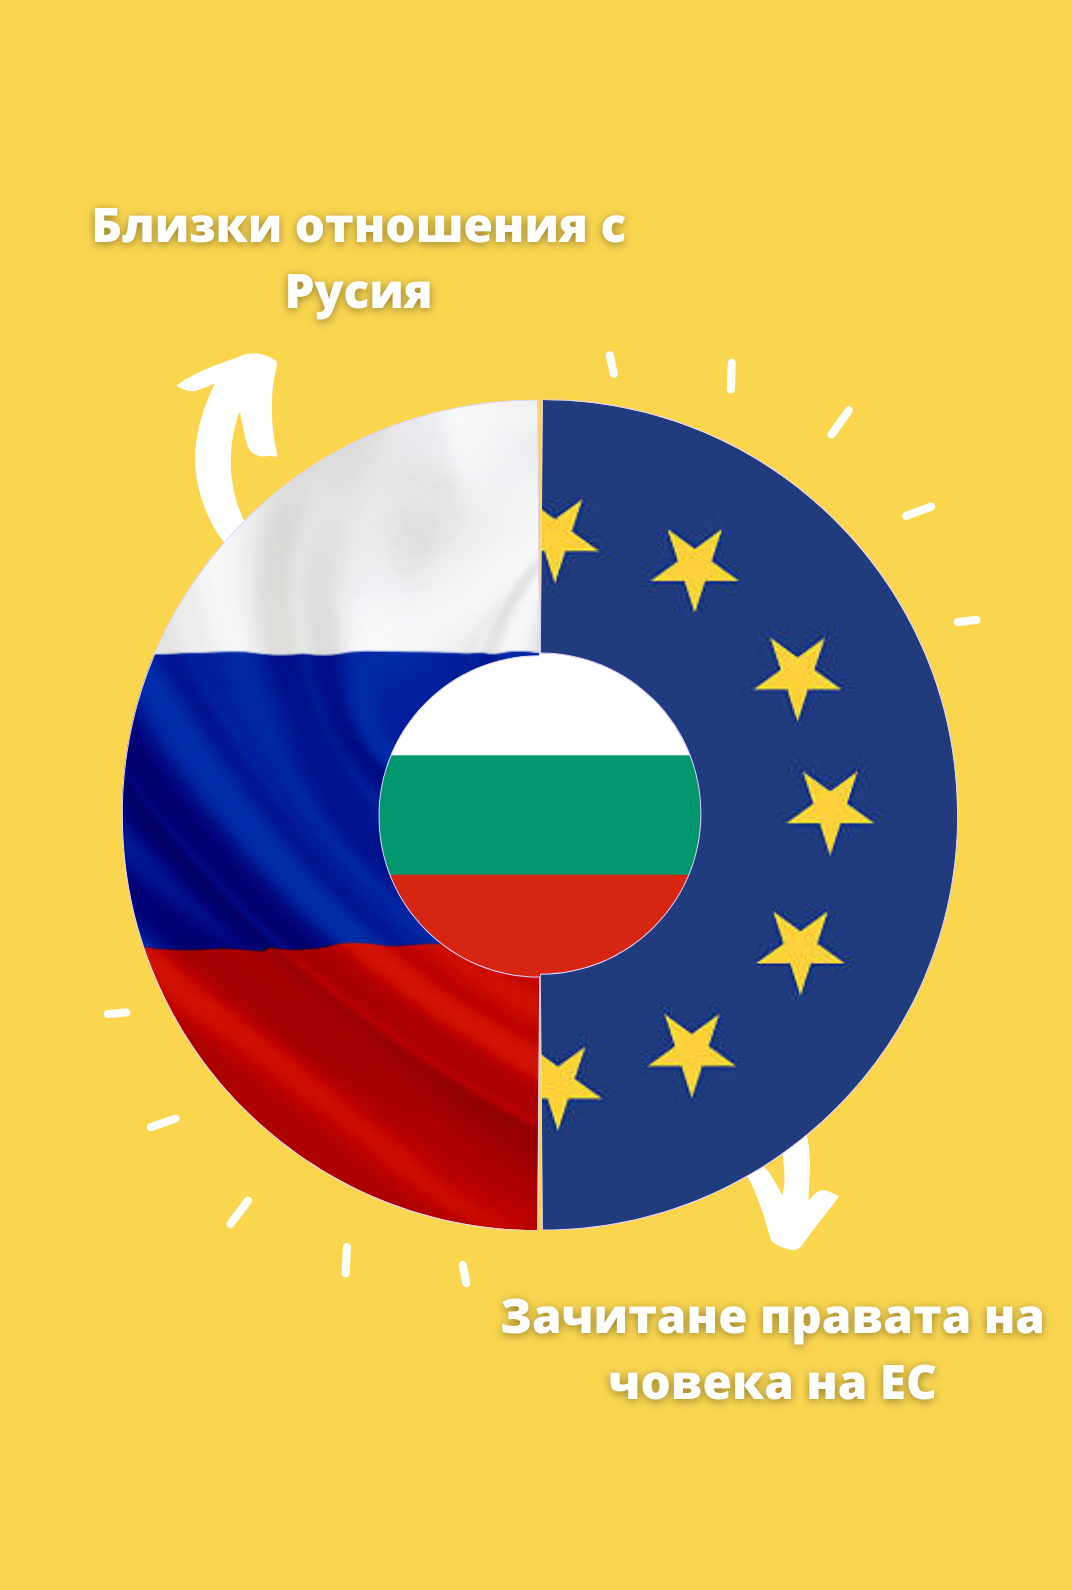  В геополитическо отношение България още веднъж се намира сред Русия и Европейския съюз 